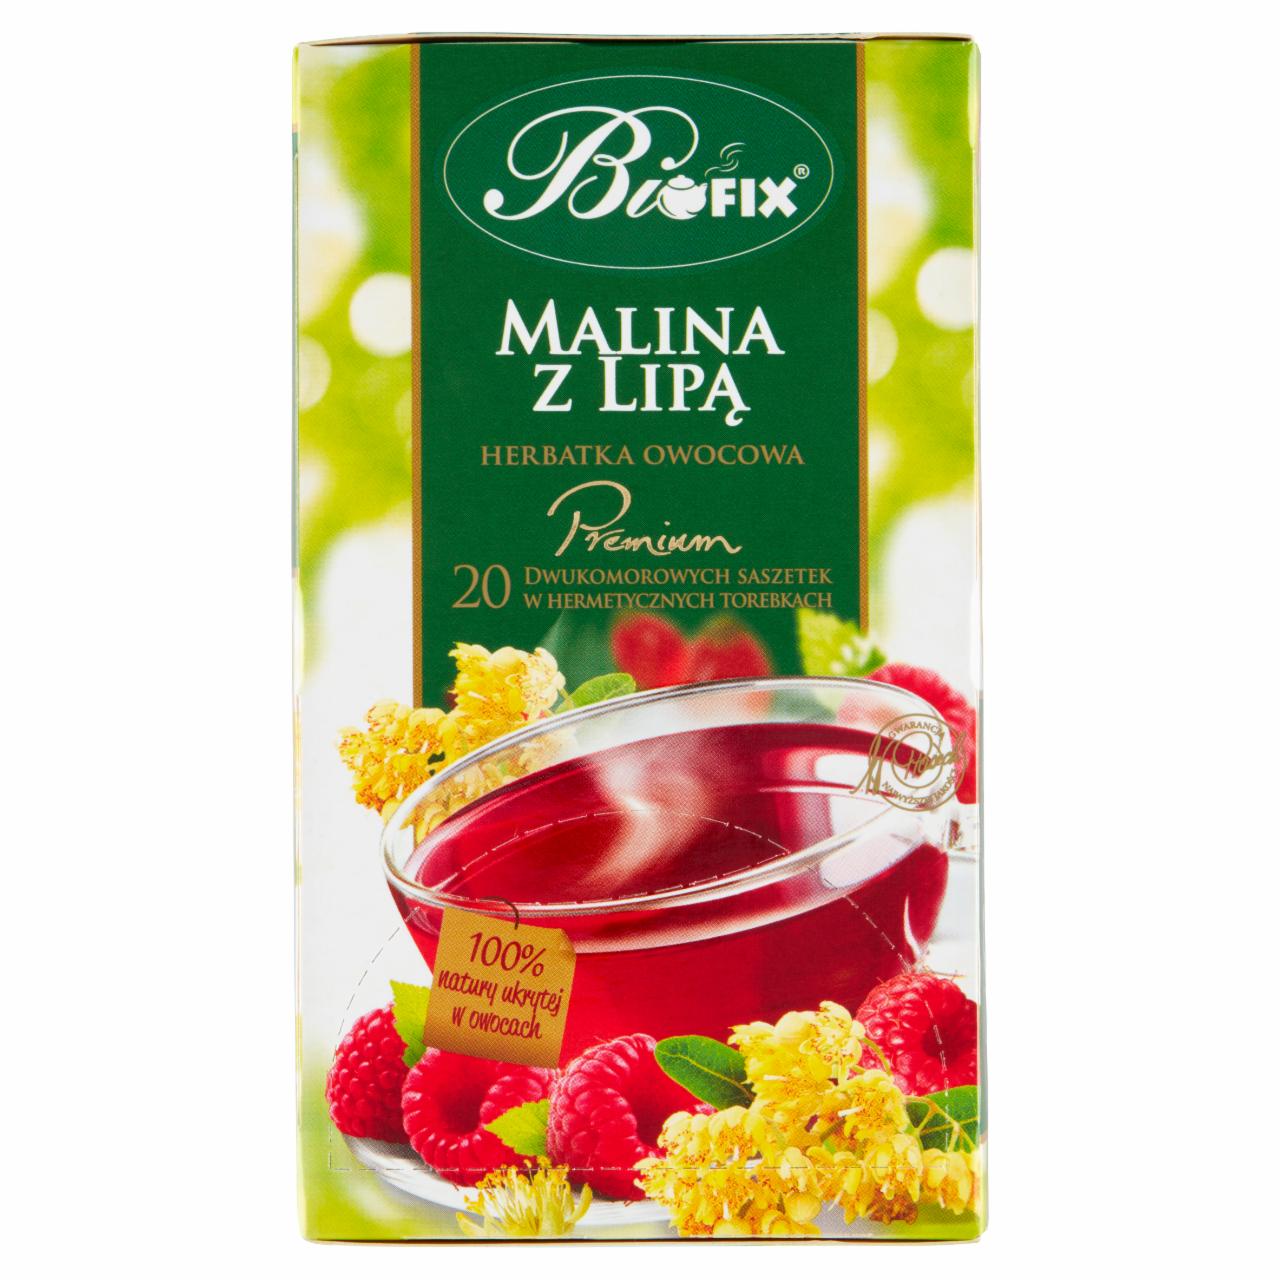 Zdjęcia - Bifix Premium Herbatka owocowa malina z lipą 40 g (20 x 2 g)